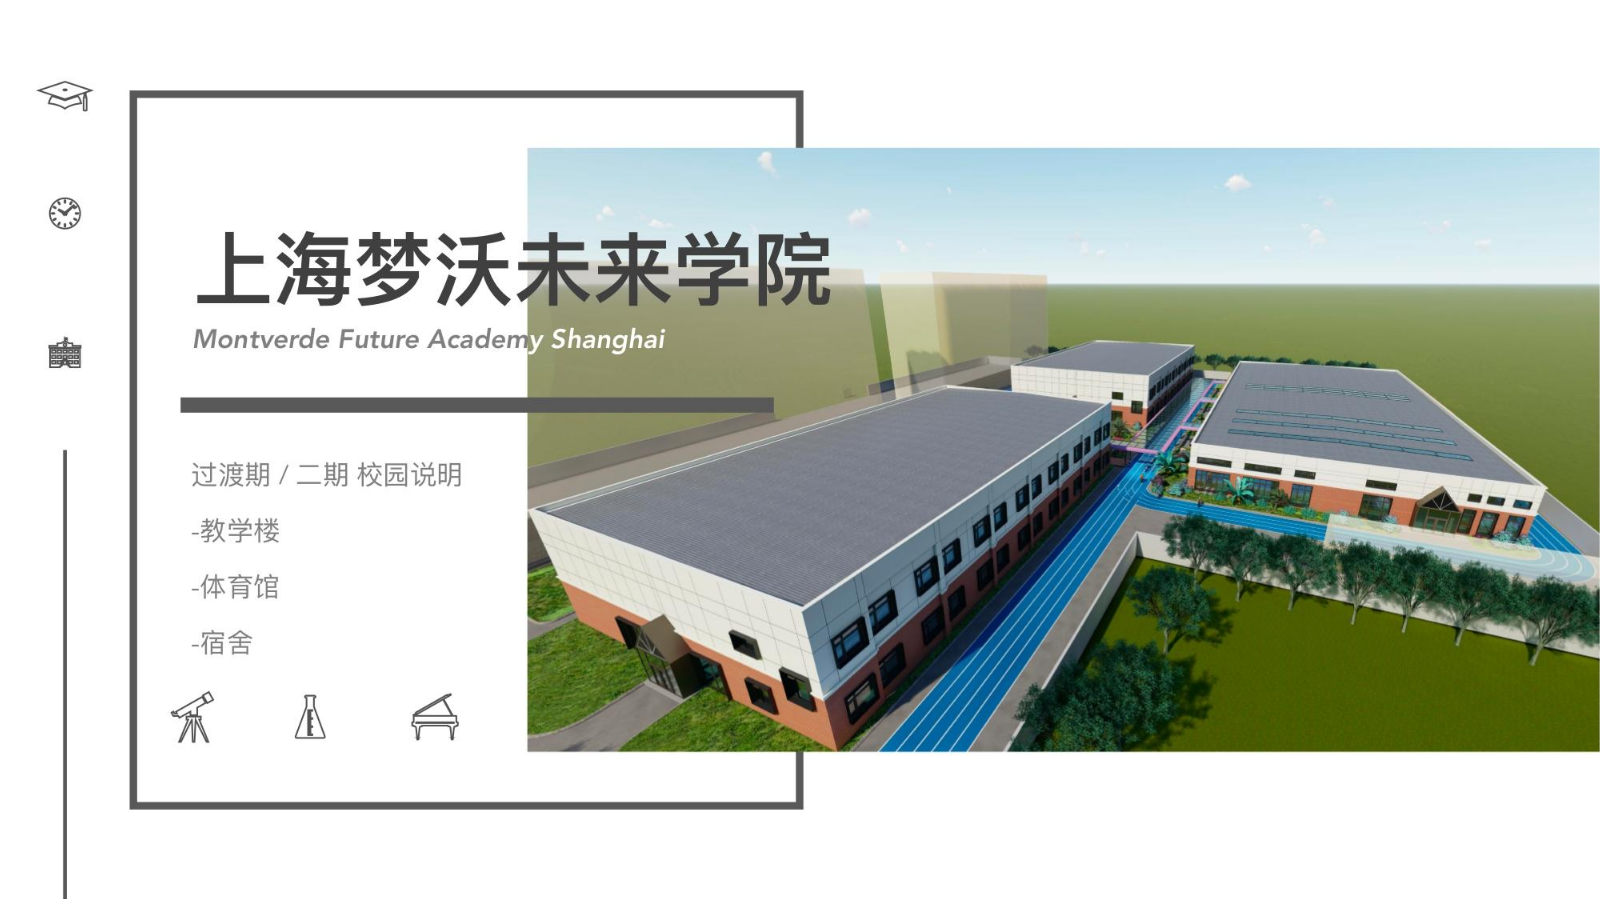 上海梦沃未来学院新学期方案